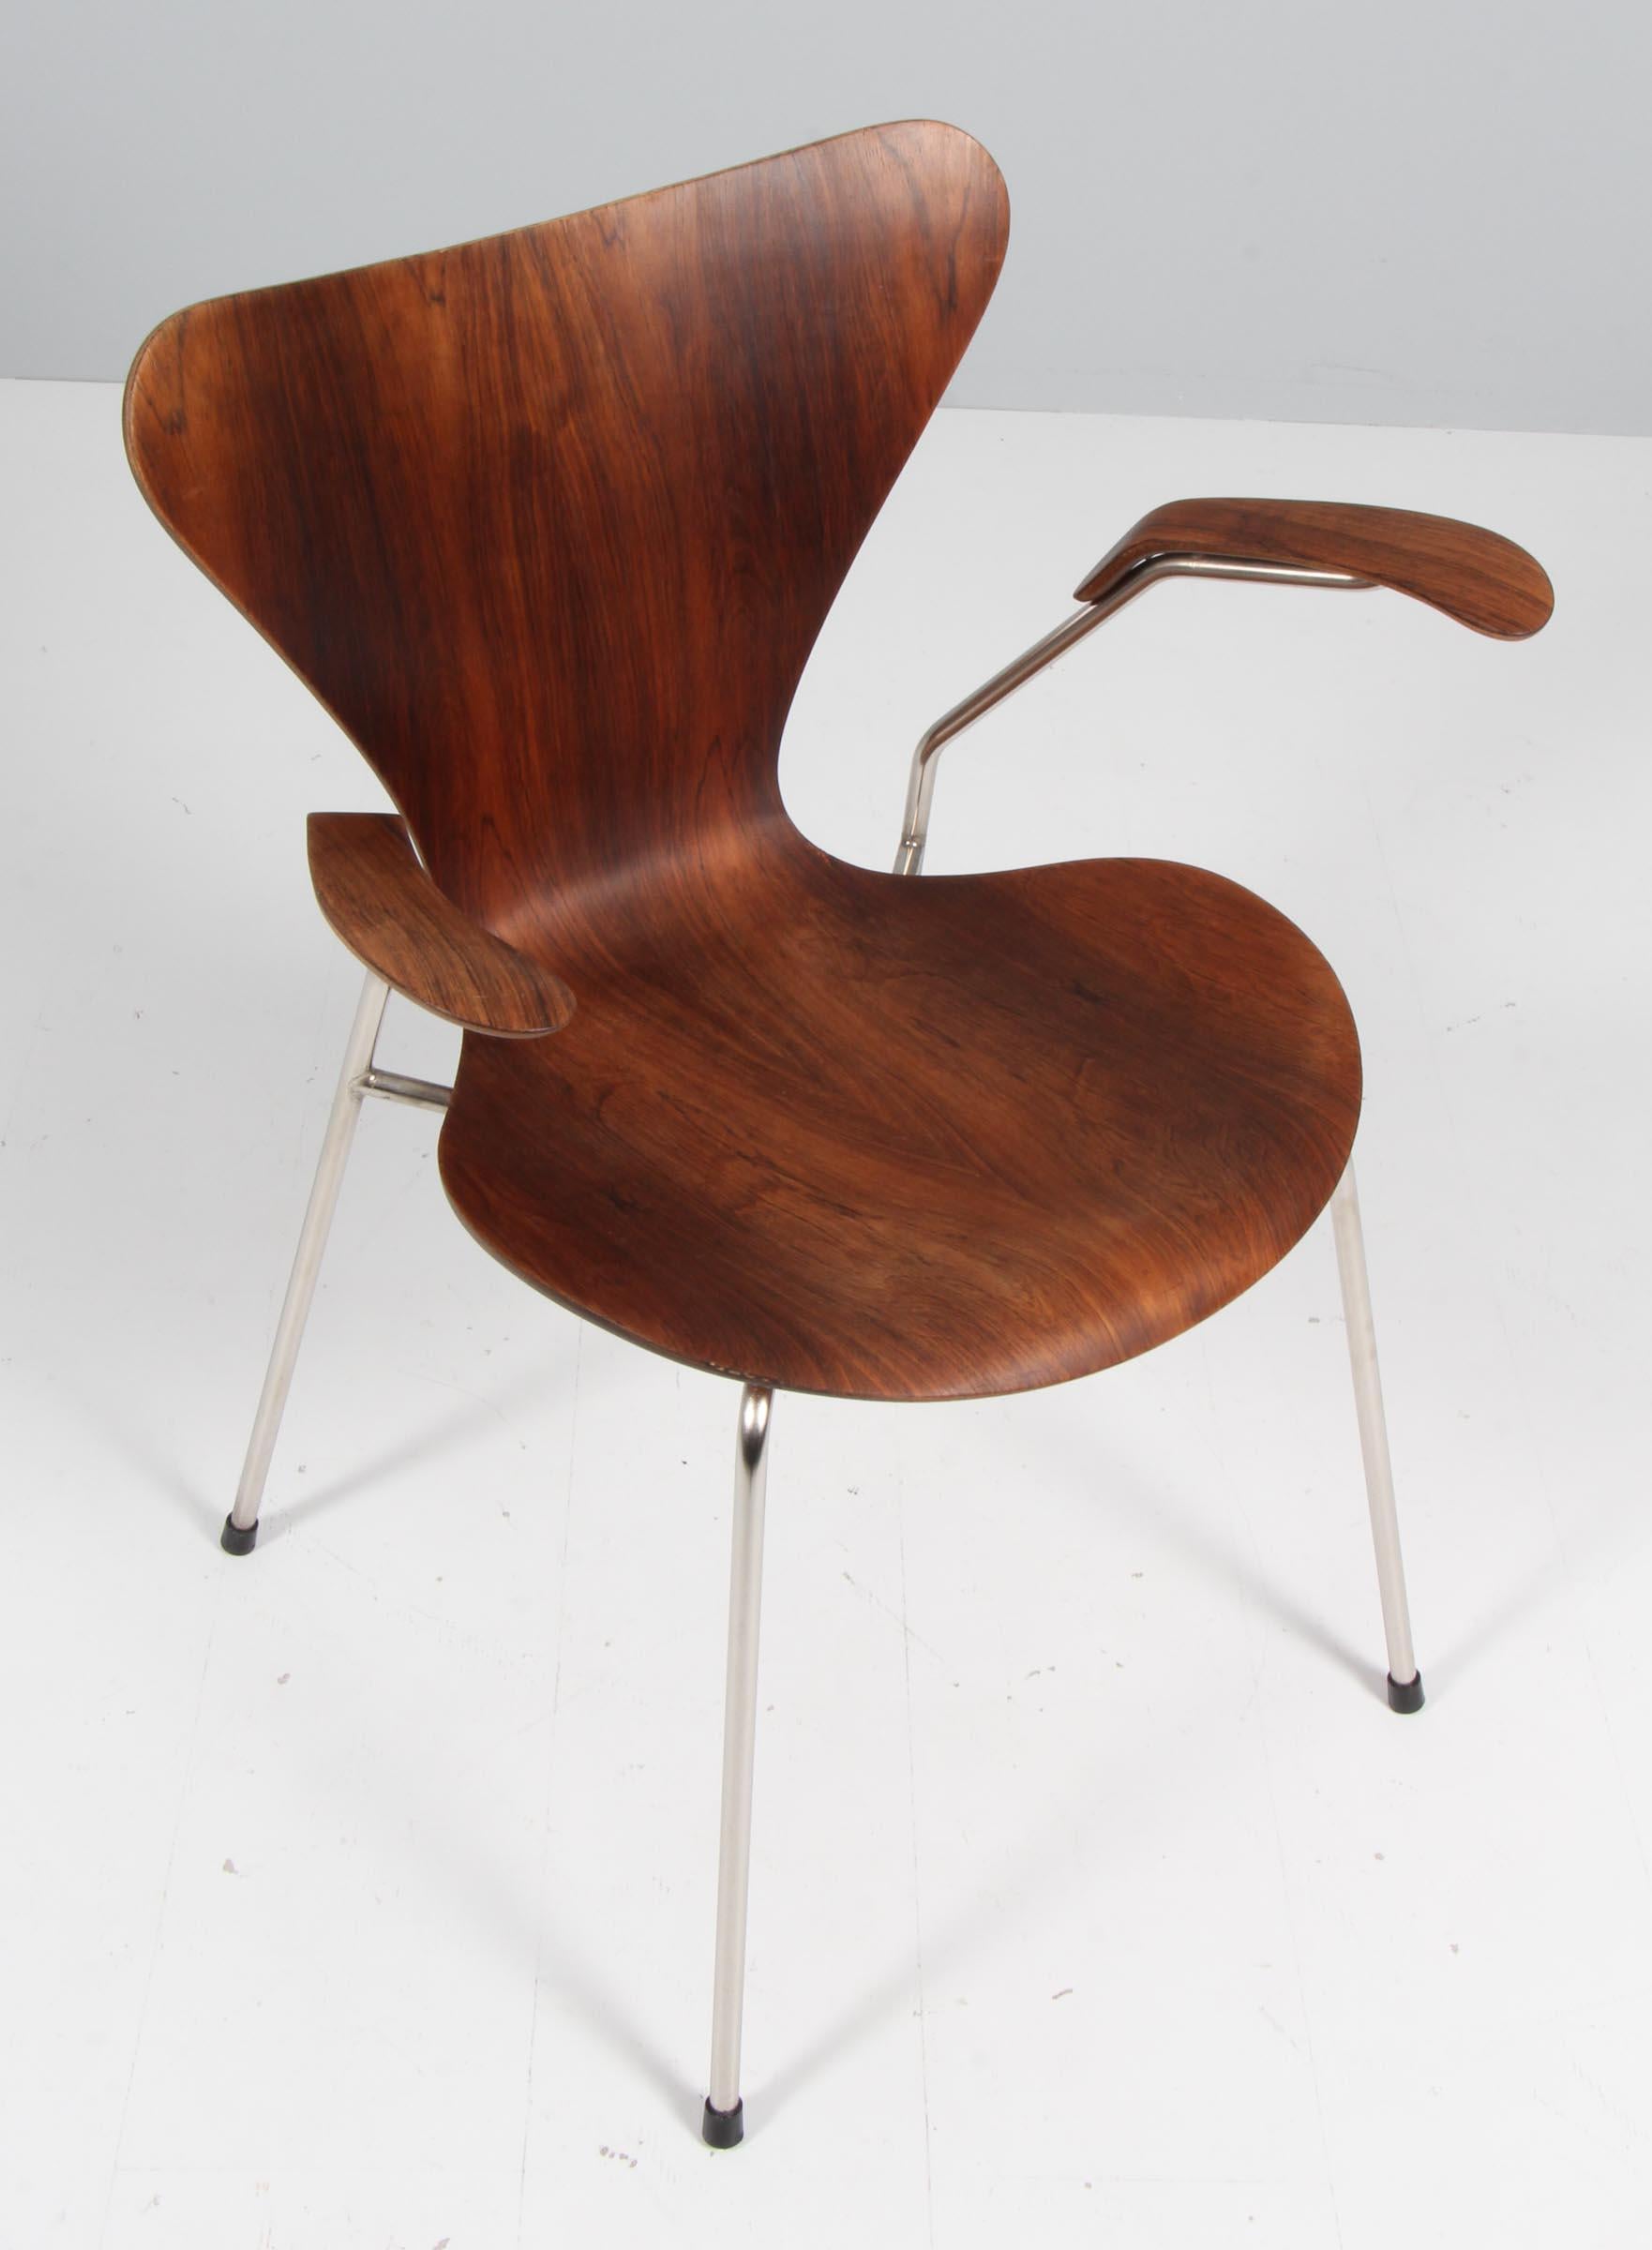 Arne Jacobsen armchair with veener of rosewood

Base of chrome steel tube.

Model 3207 Syveren, made by Fritz Hansen.